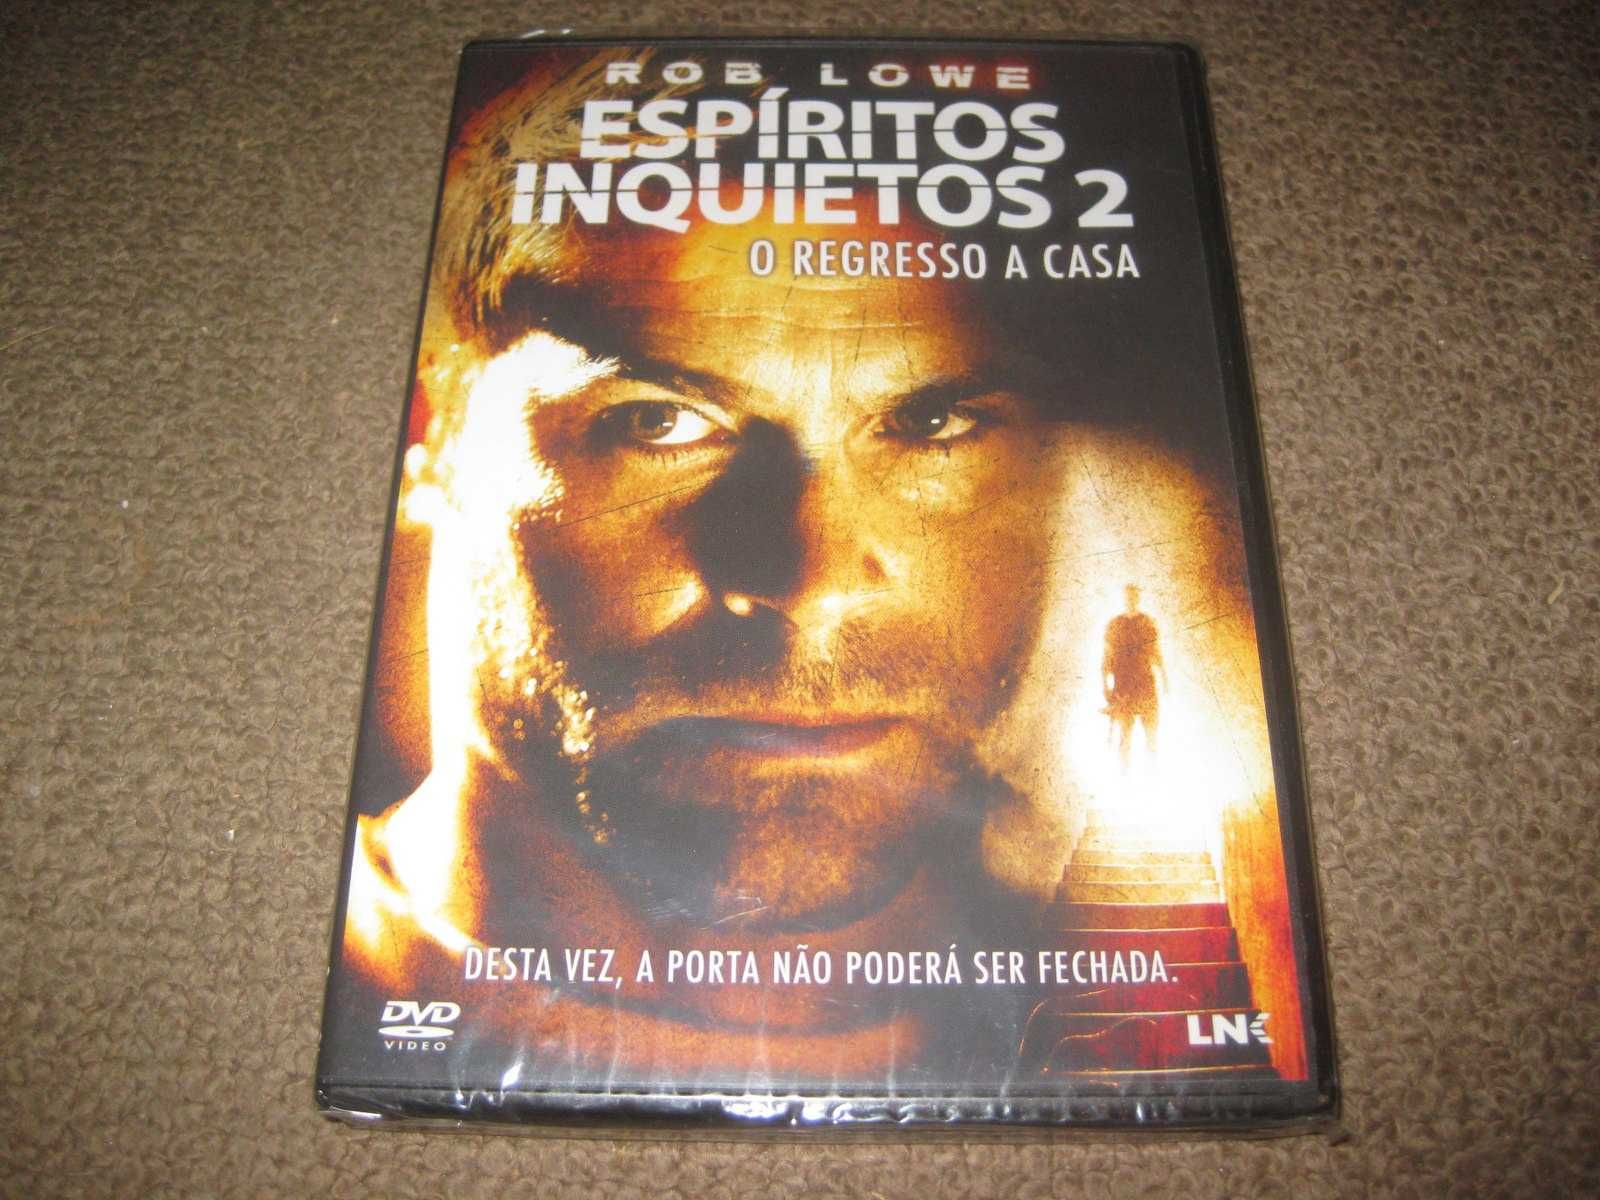 DVD "Espíritos Inquietos 2- O Regresso a Casa" com Rob Lowe/Selado!